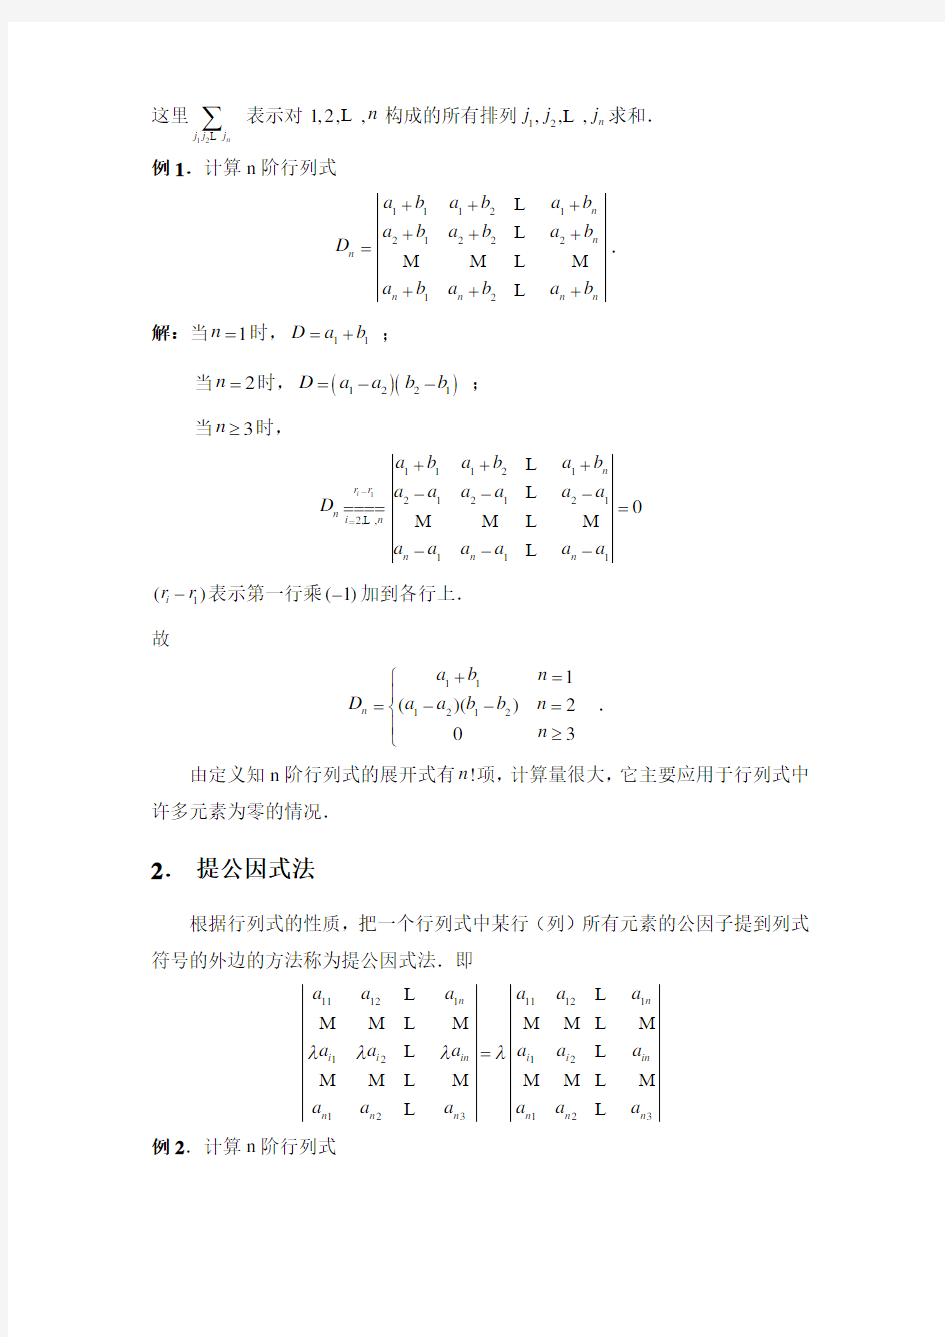 n阶行列式的计算方法